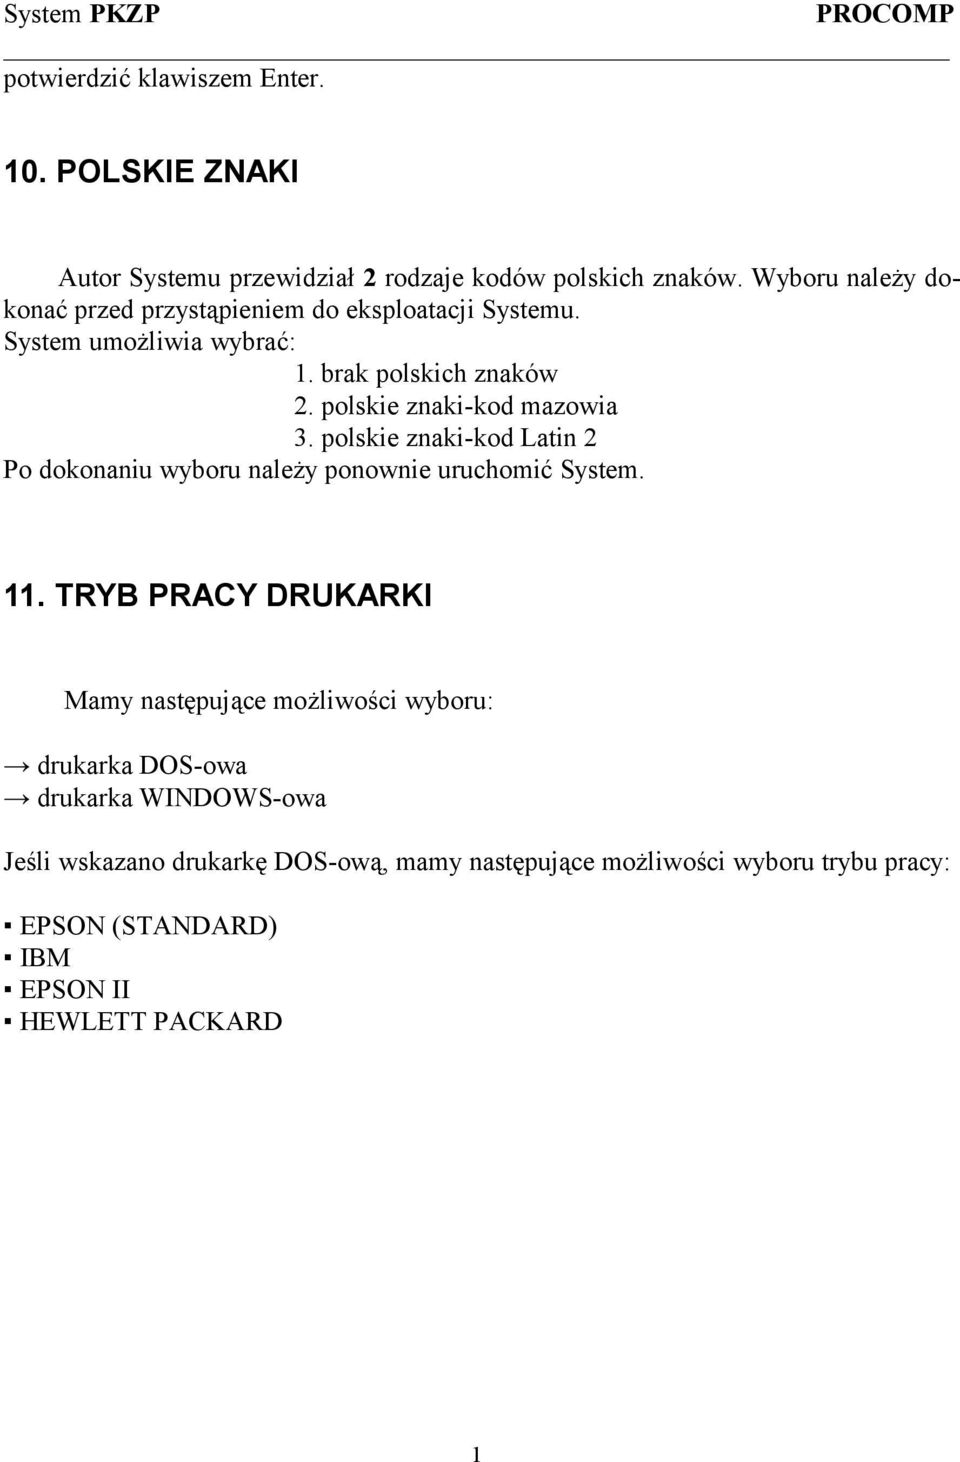 polskie znaki-kod mazowia 3. polskie znaki-kod Latin 2 Po dokonaniu wyboru należy ponownie uruchomić System. 11.